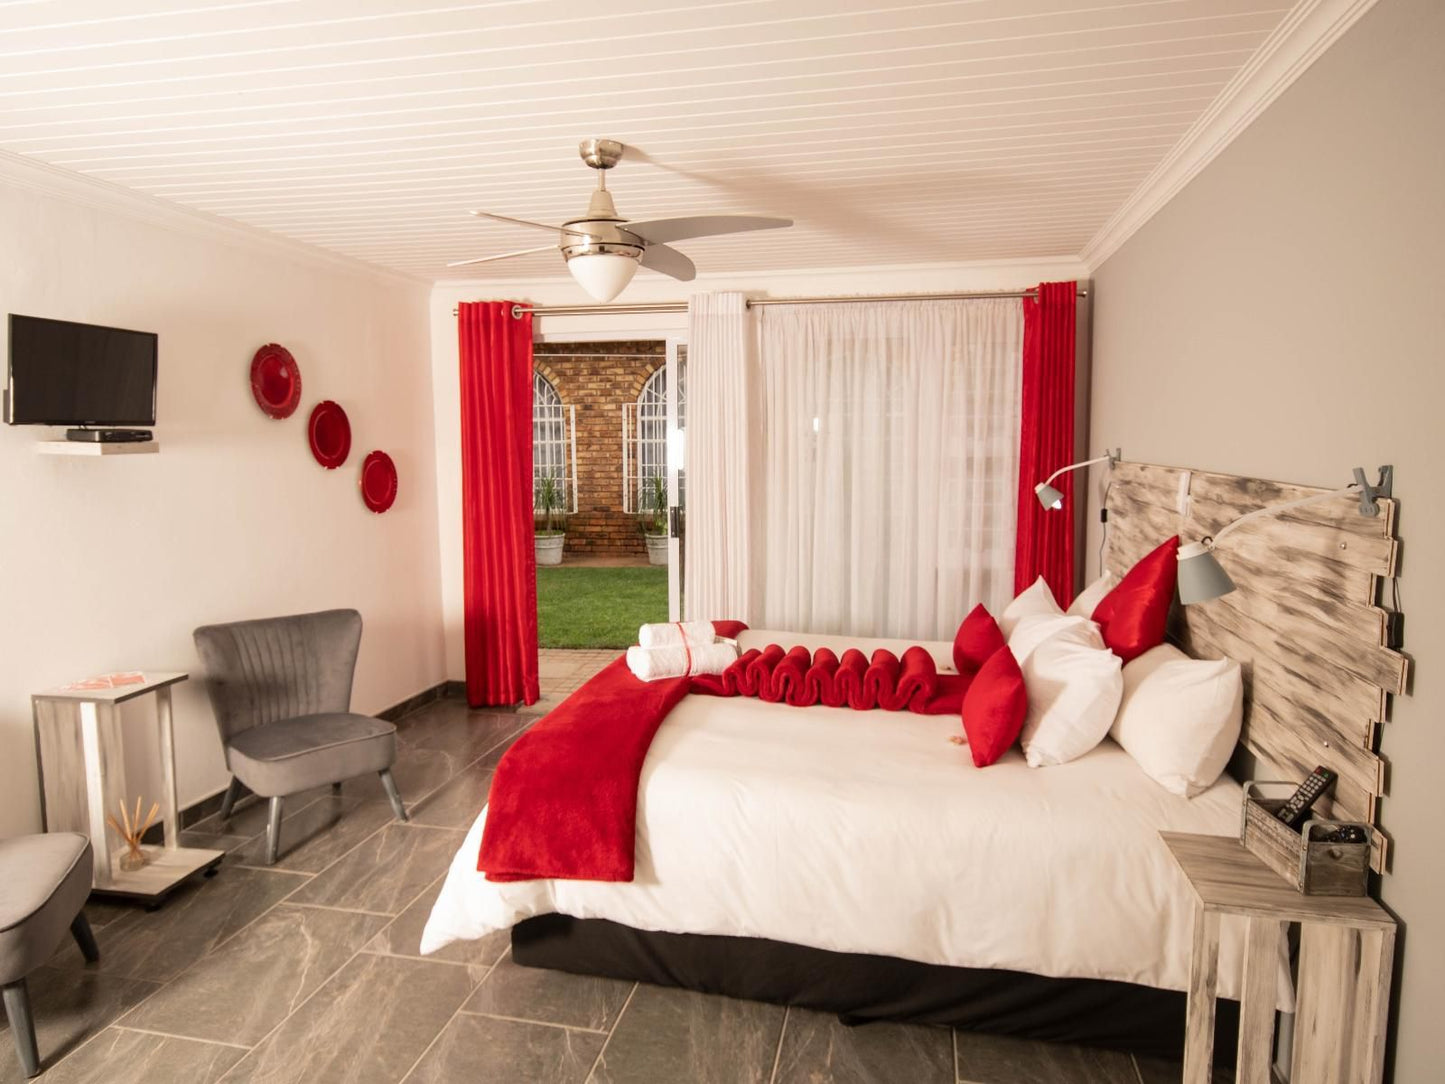 Oppiplot Guest House Kempton Park Bredell Johannesburg Gauteng South Africa Bedroom